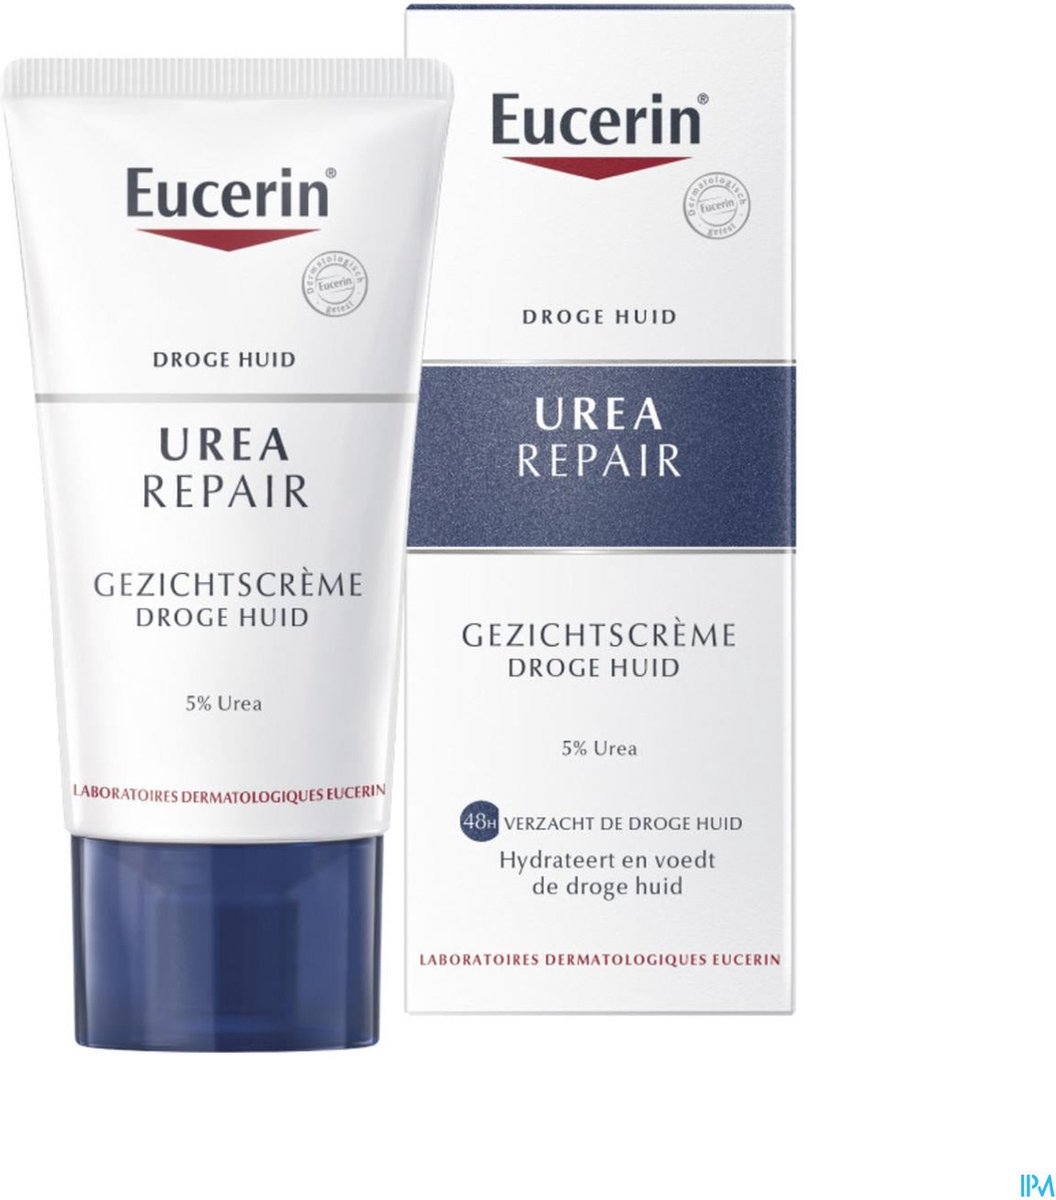 Eucerin Verzachtende gezichtscreme 5% Urea - 50 ml - Dagcrème | bol.com